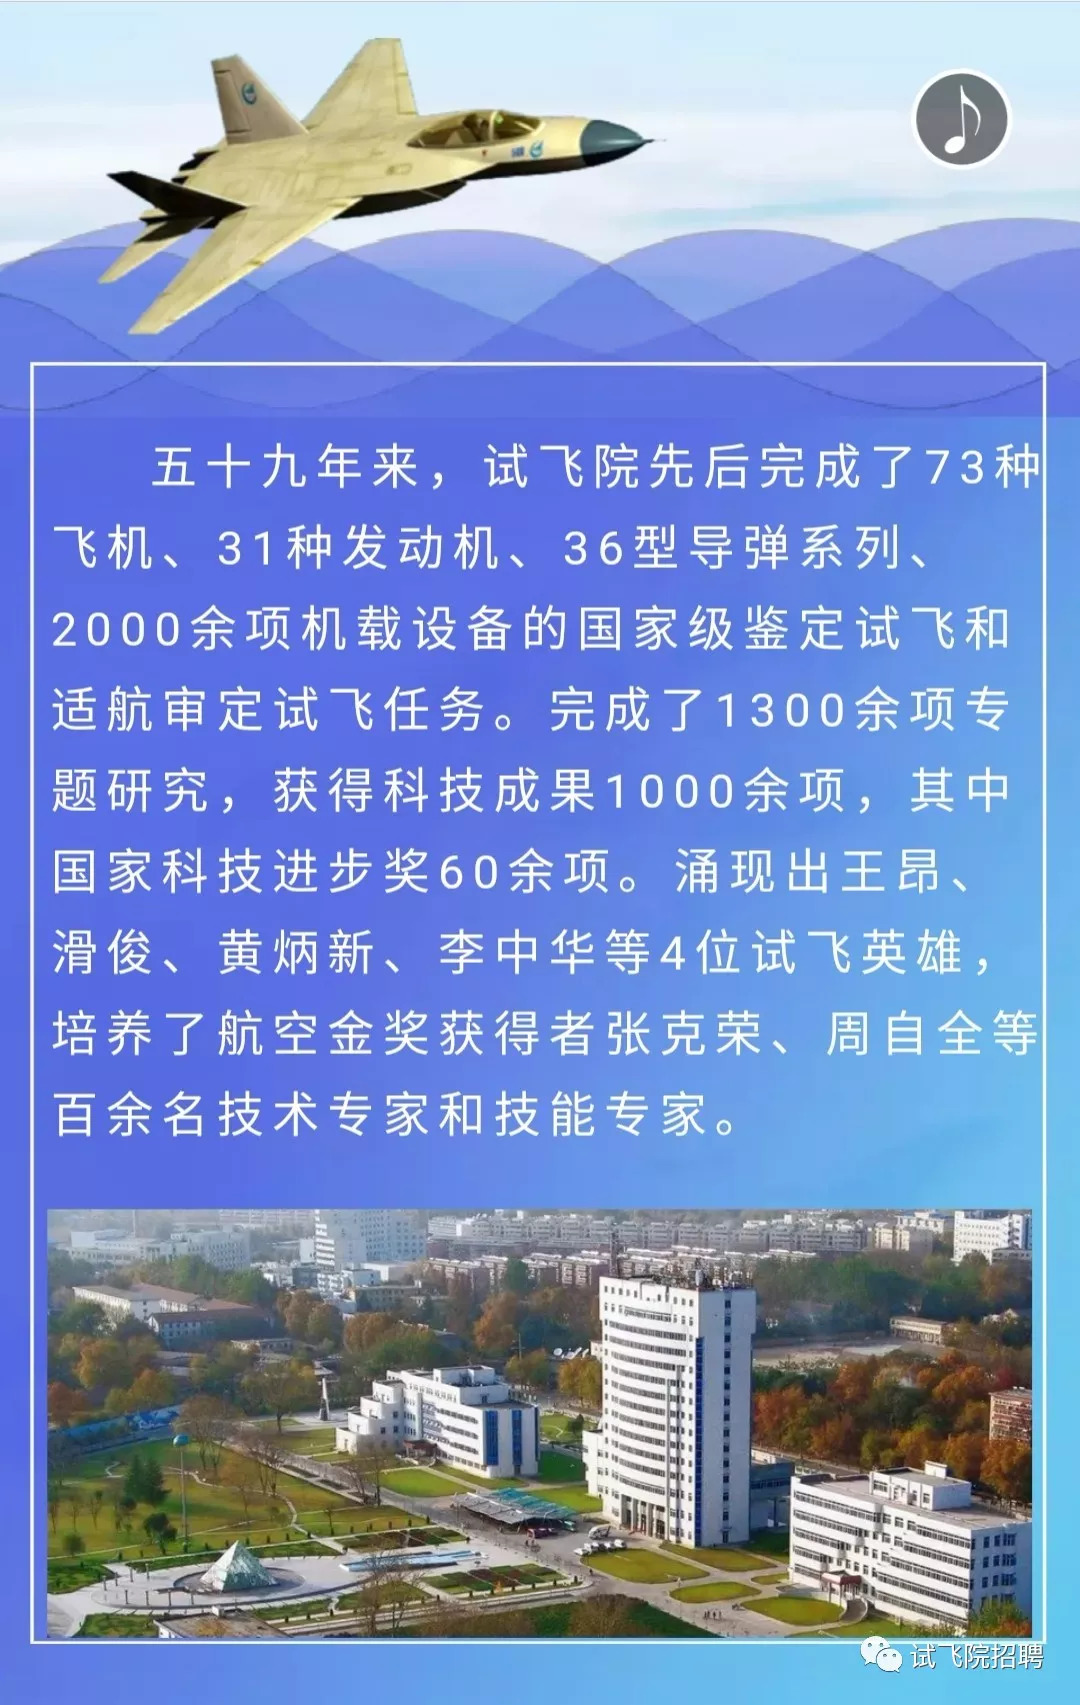 【阎良·招聘】中国飞行试验研究院2019